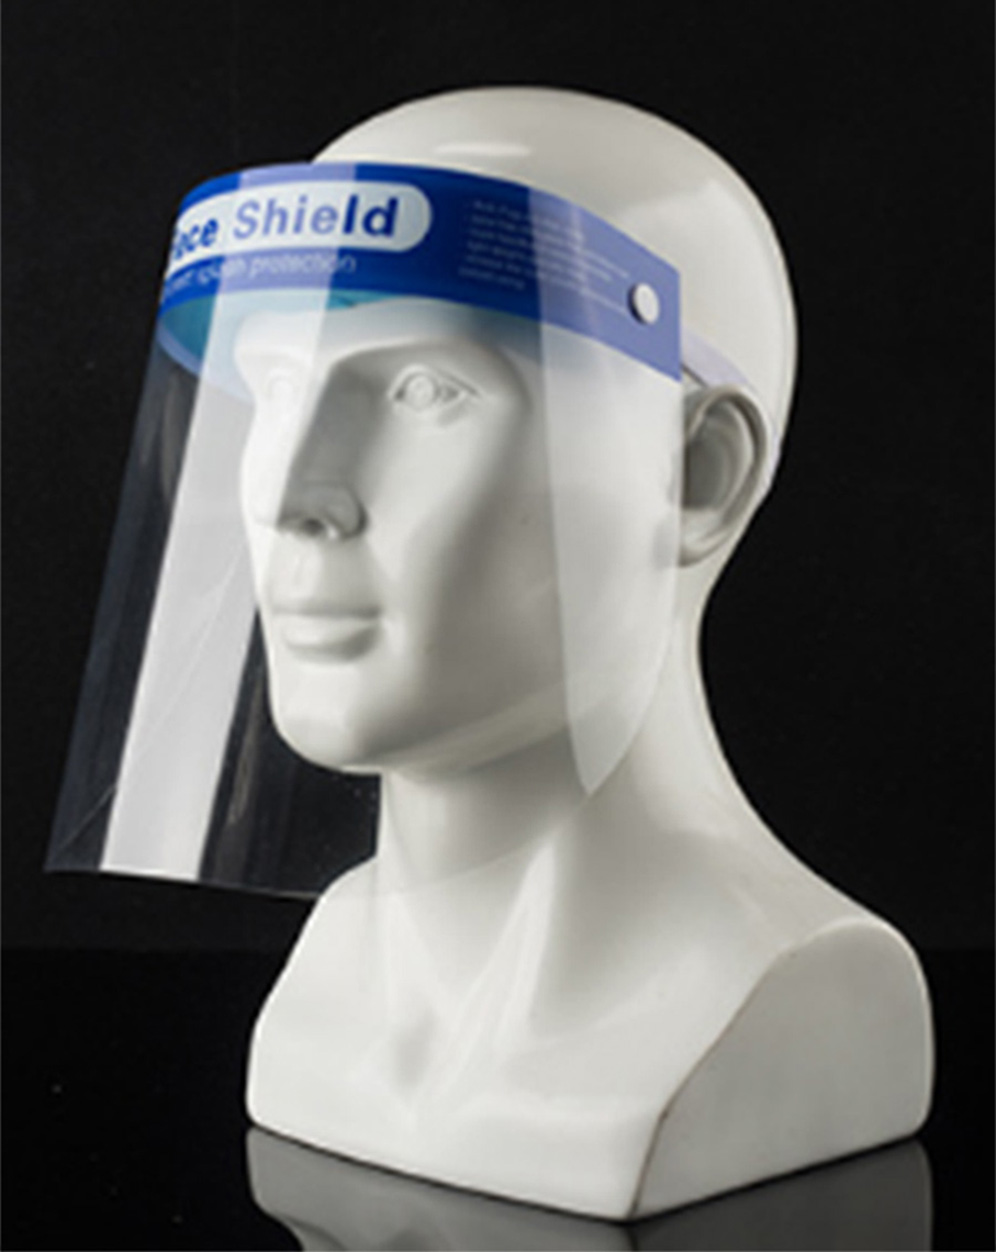 Medical splash-proof isolation mask used in hospital